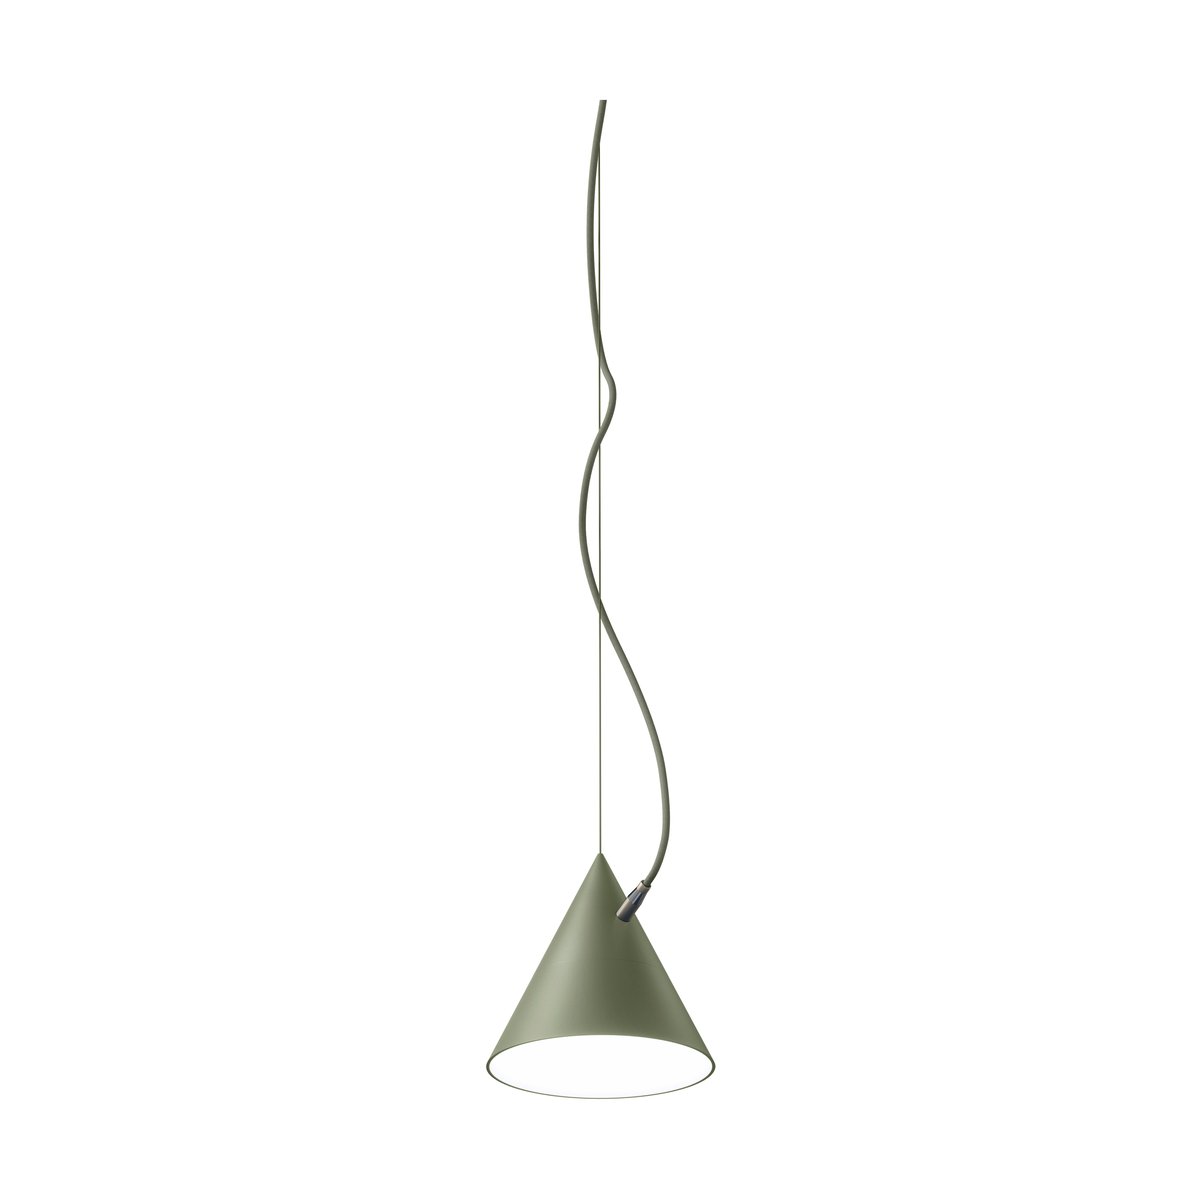 Noon Castor hanglamp 20 cm Militairgroen-groen-messing